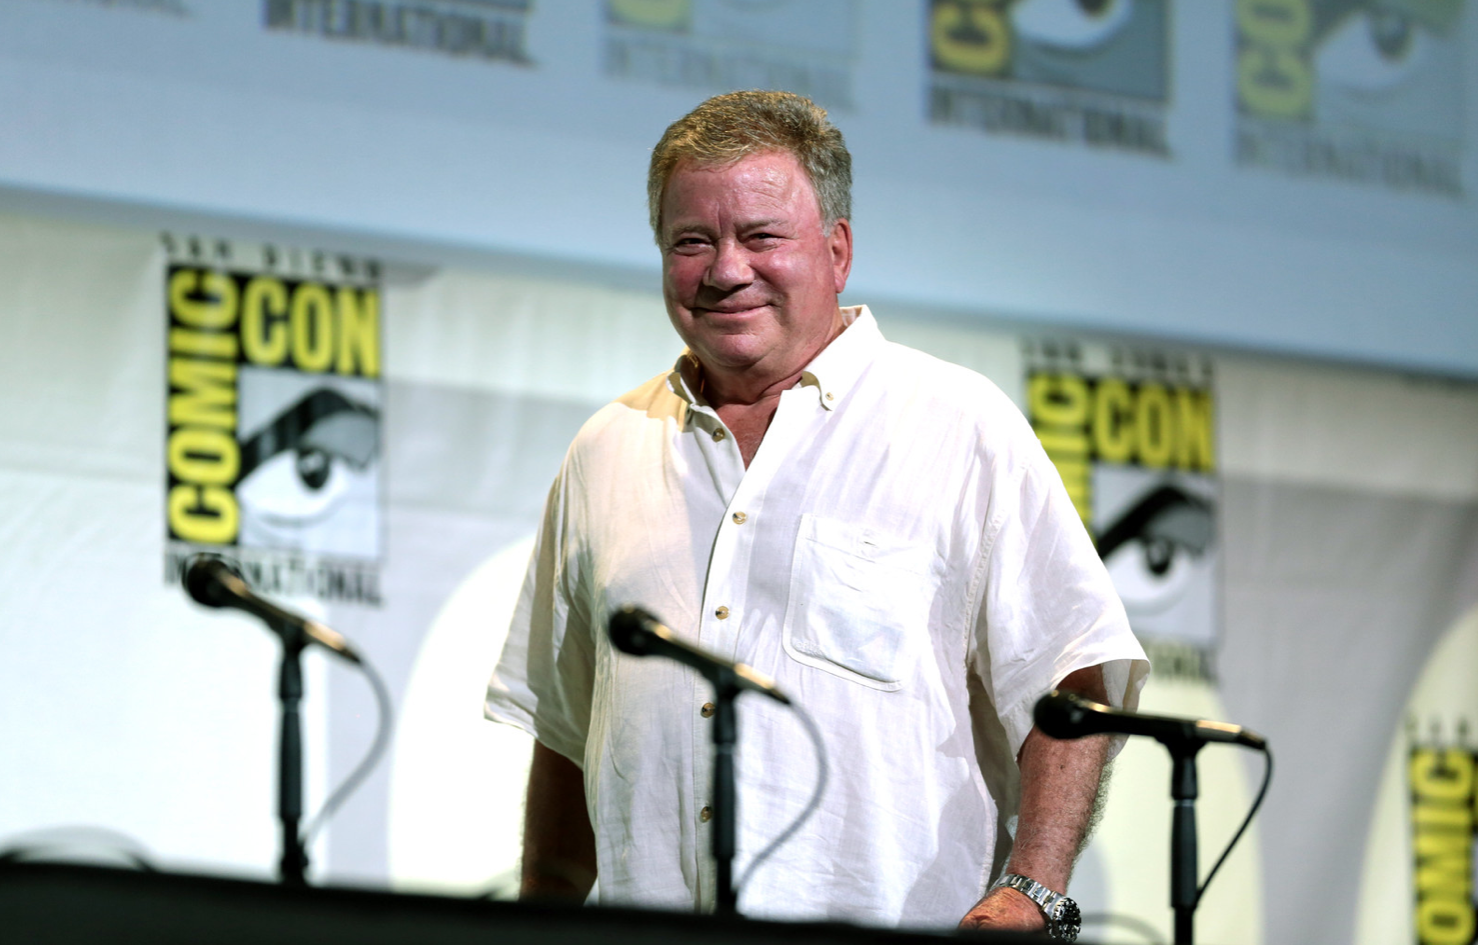 William Shatner at Comic Con